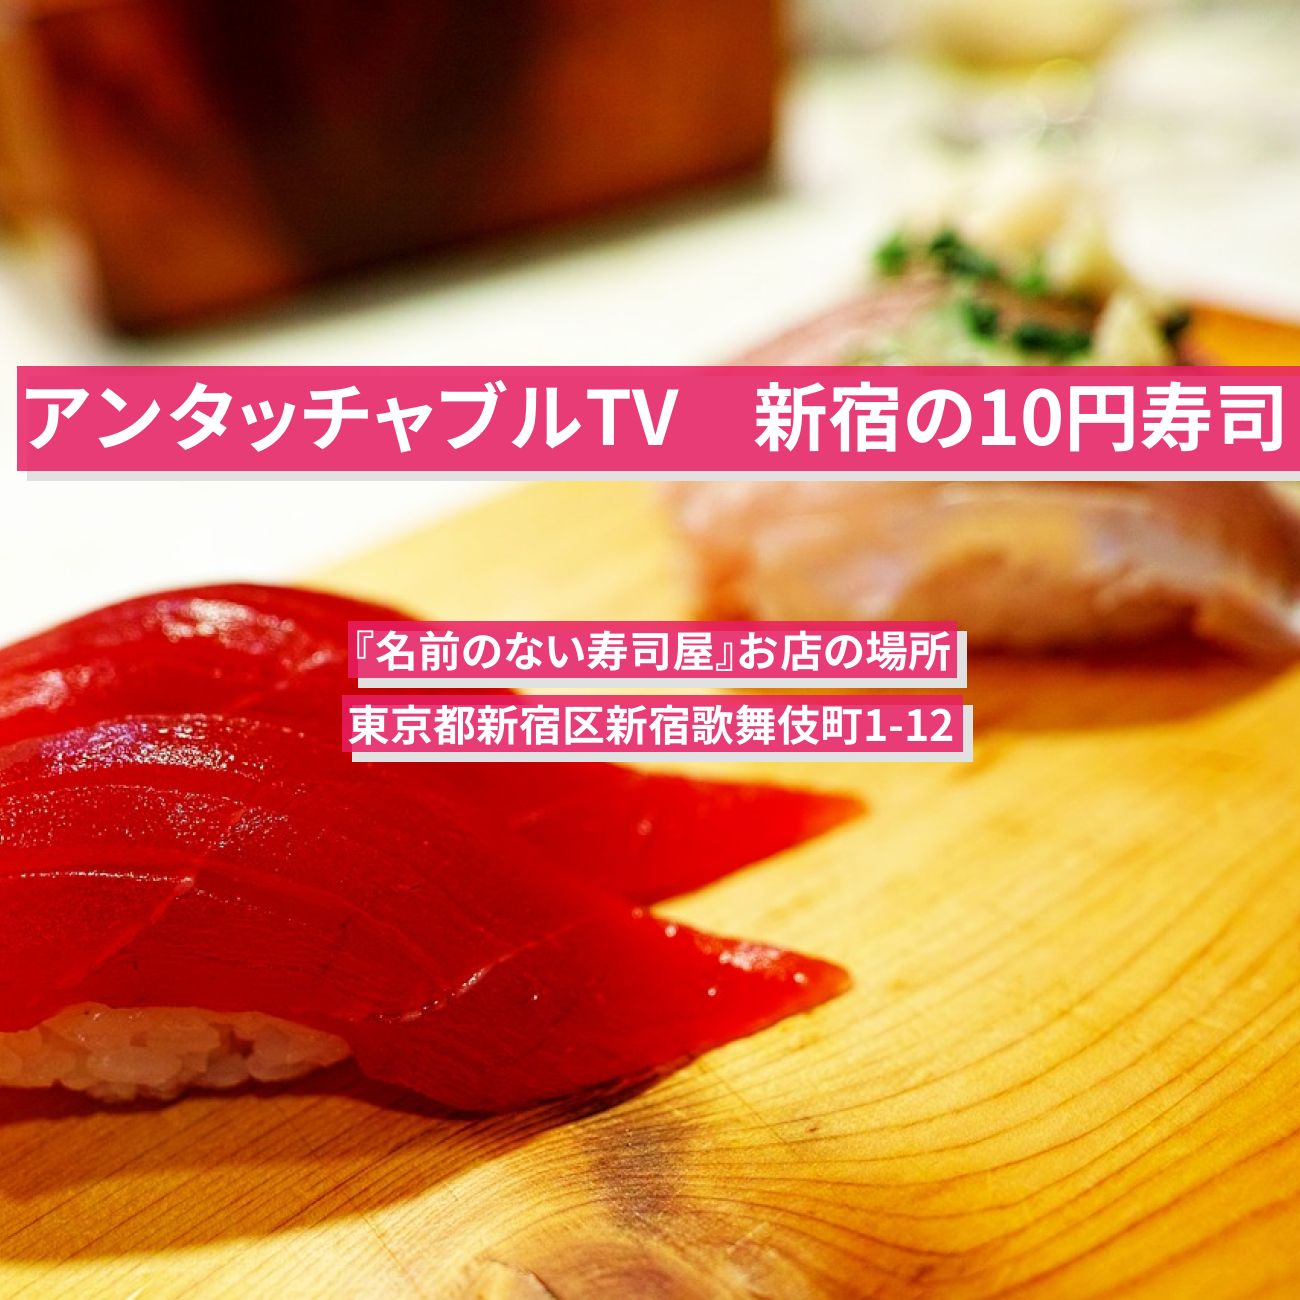 【アンタッチャブルTV】新宿の10円ぶり寿司『名前のない寿司屋』お店の場所